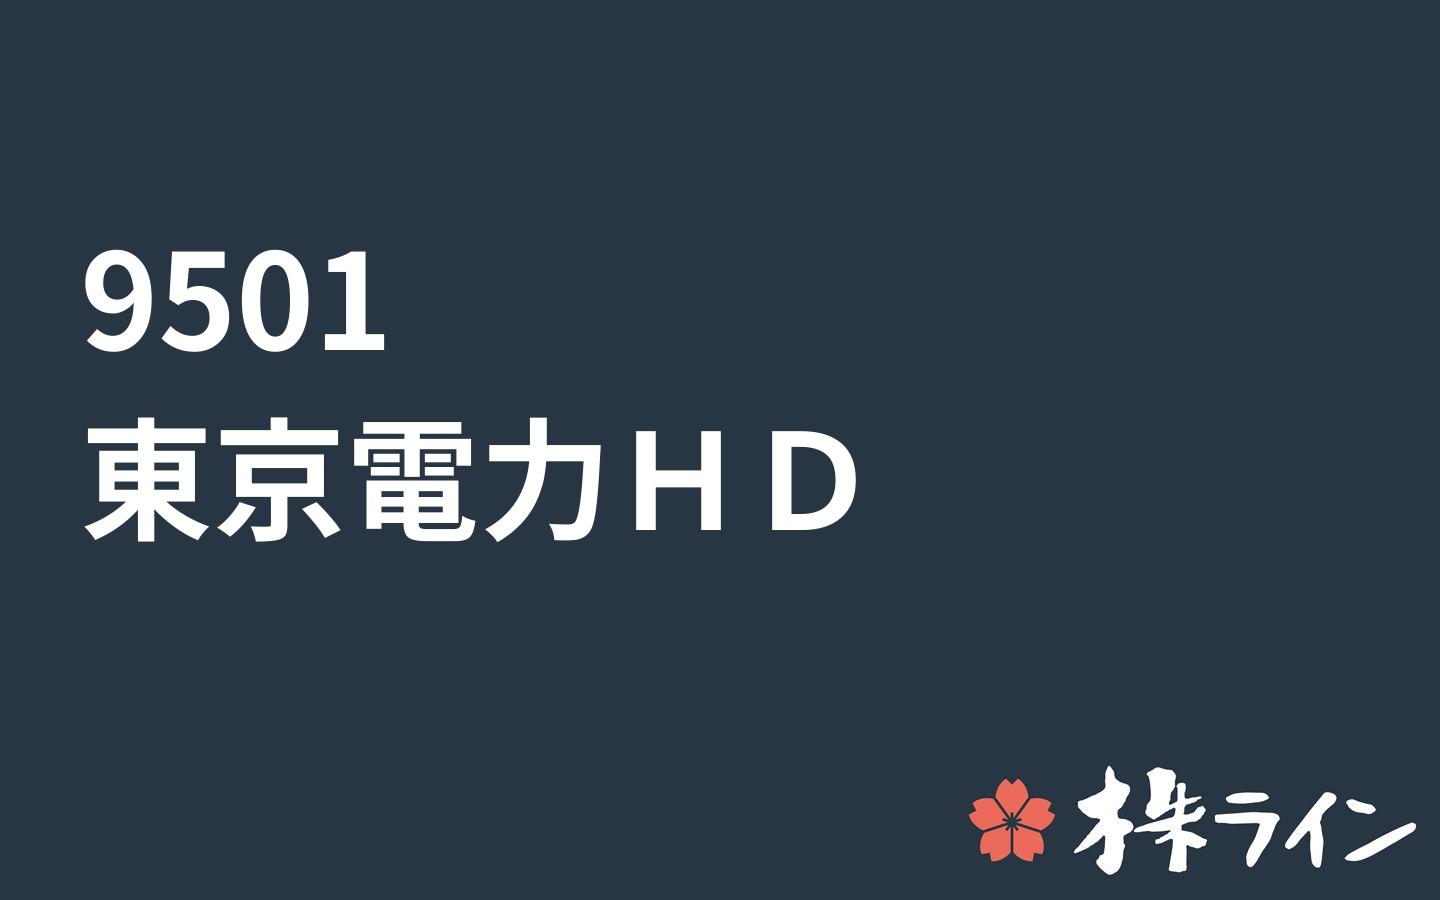 電力 掲示板 東京 株価 東京電力ホールディングス (9501)